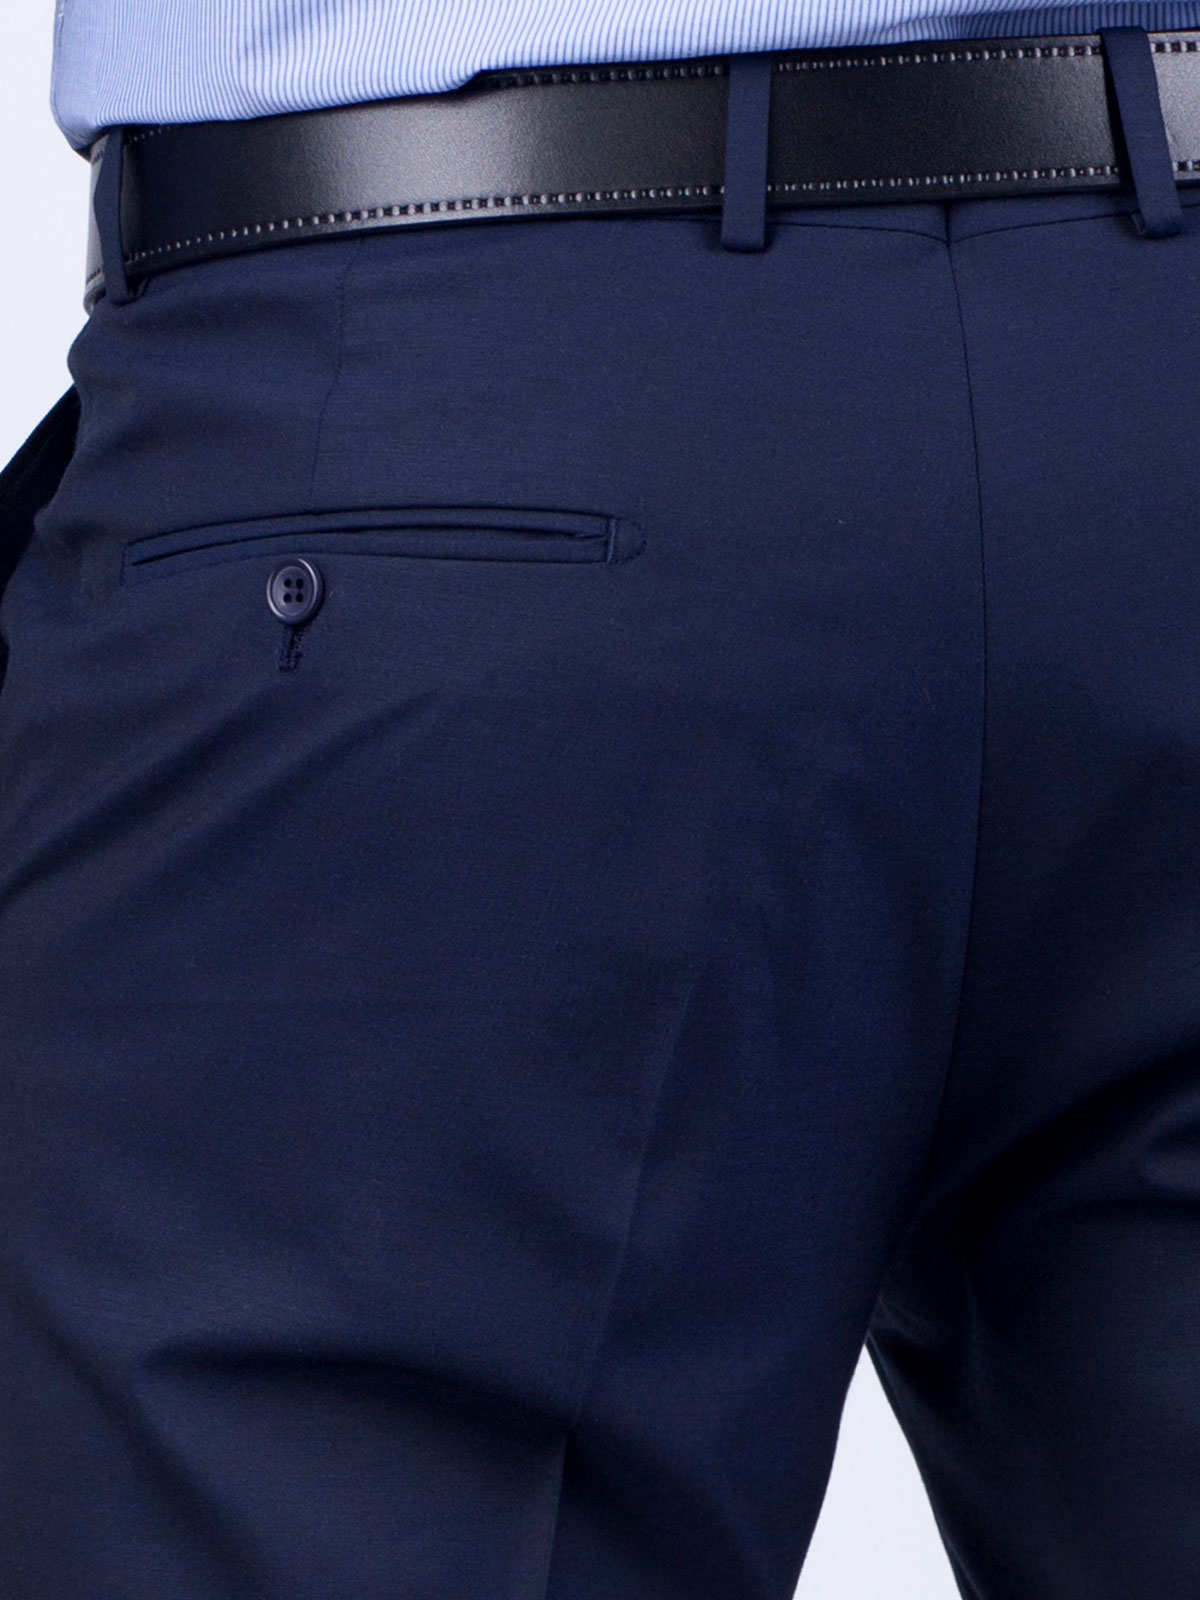 Κομψό παντελόνι βισκόζης σε σκούρο μπλε - 63159 € 24.75 img3